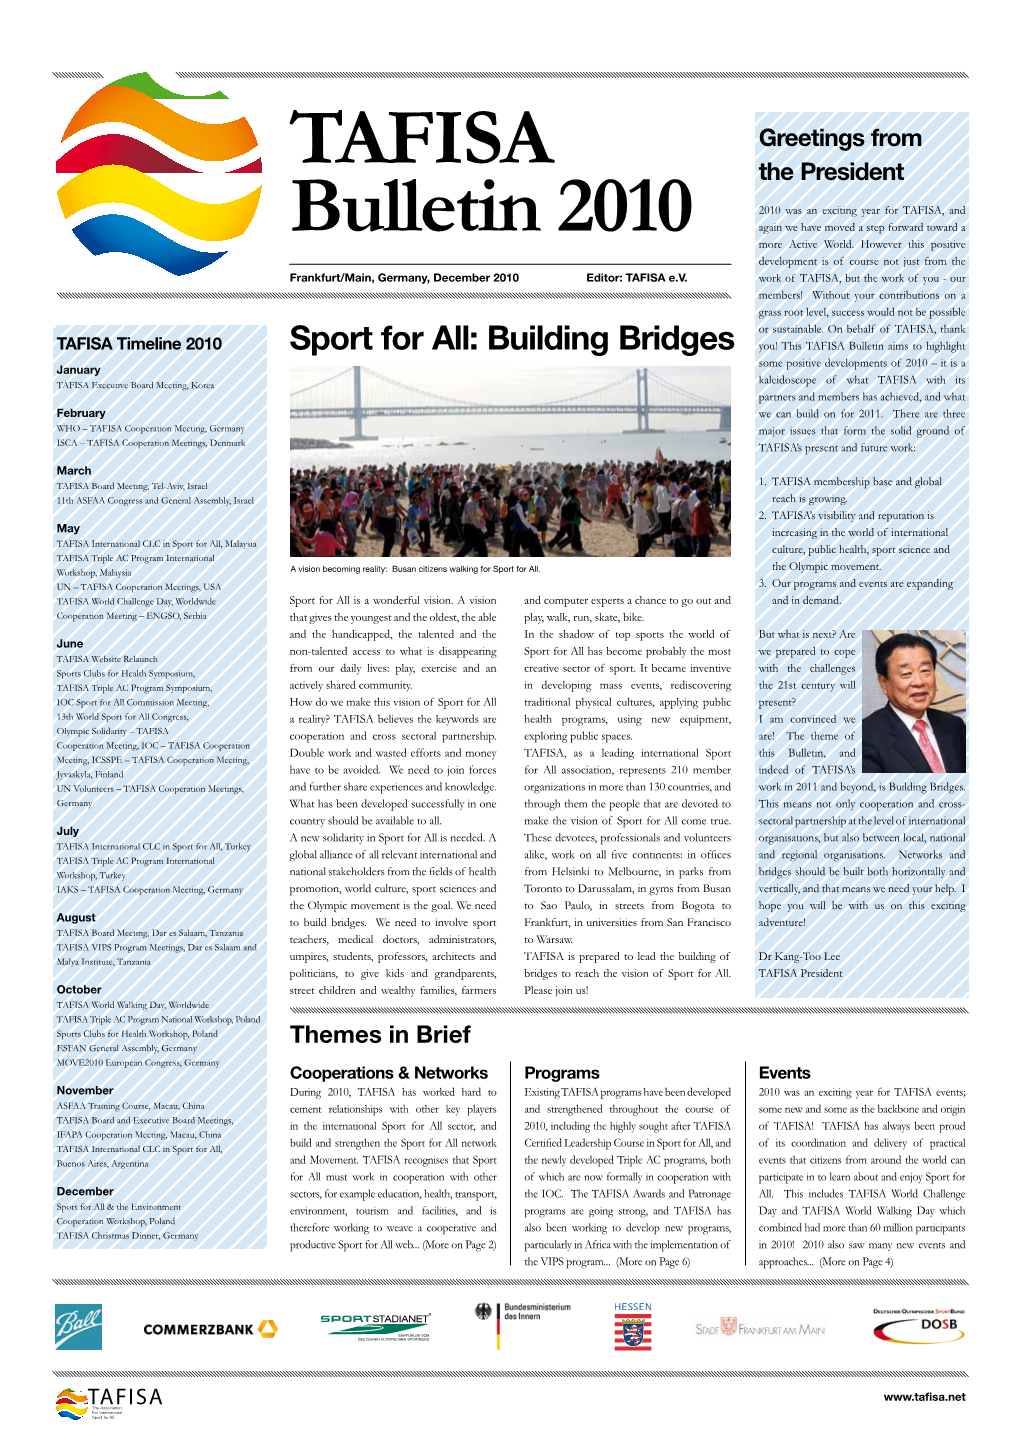 TAFISA Bulletin 2010